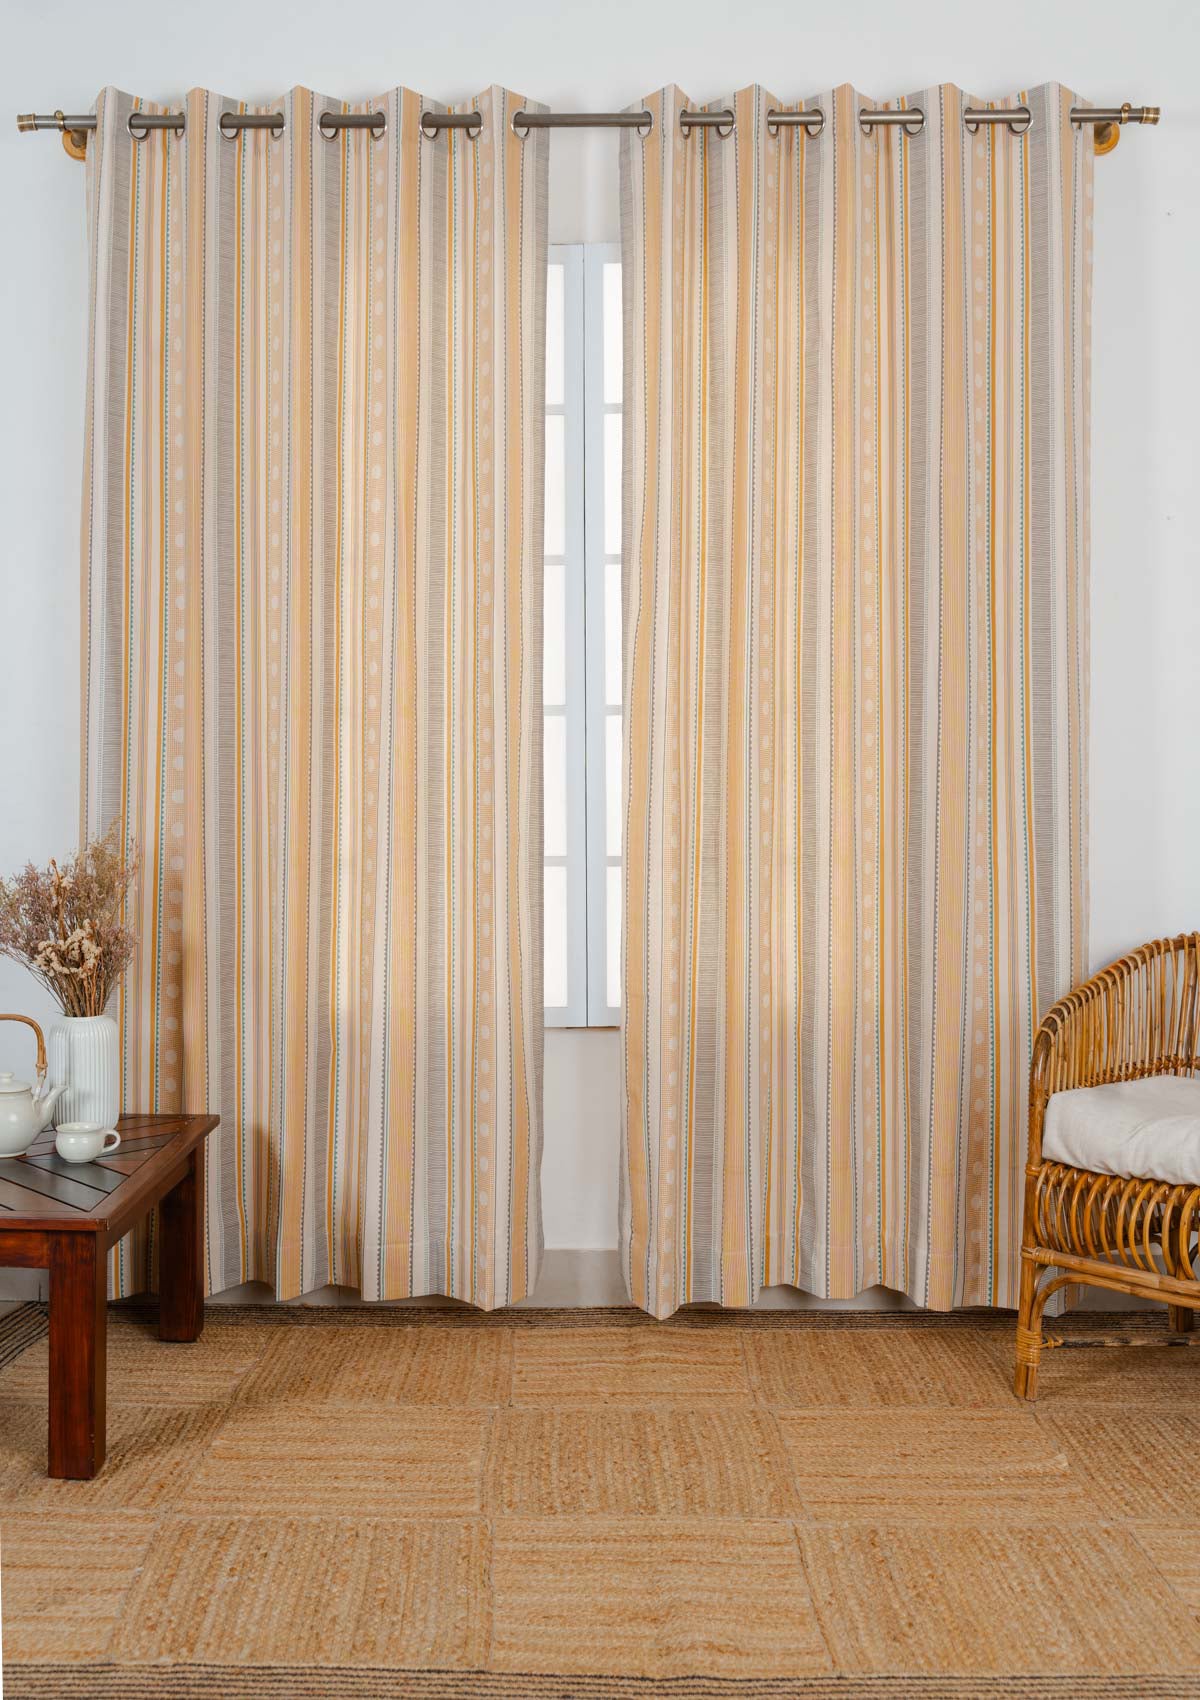 Buru 100% cotton boho customisable curtain for living room - Room darkening - Mustard